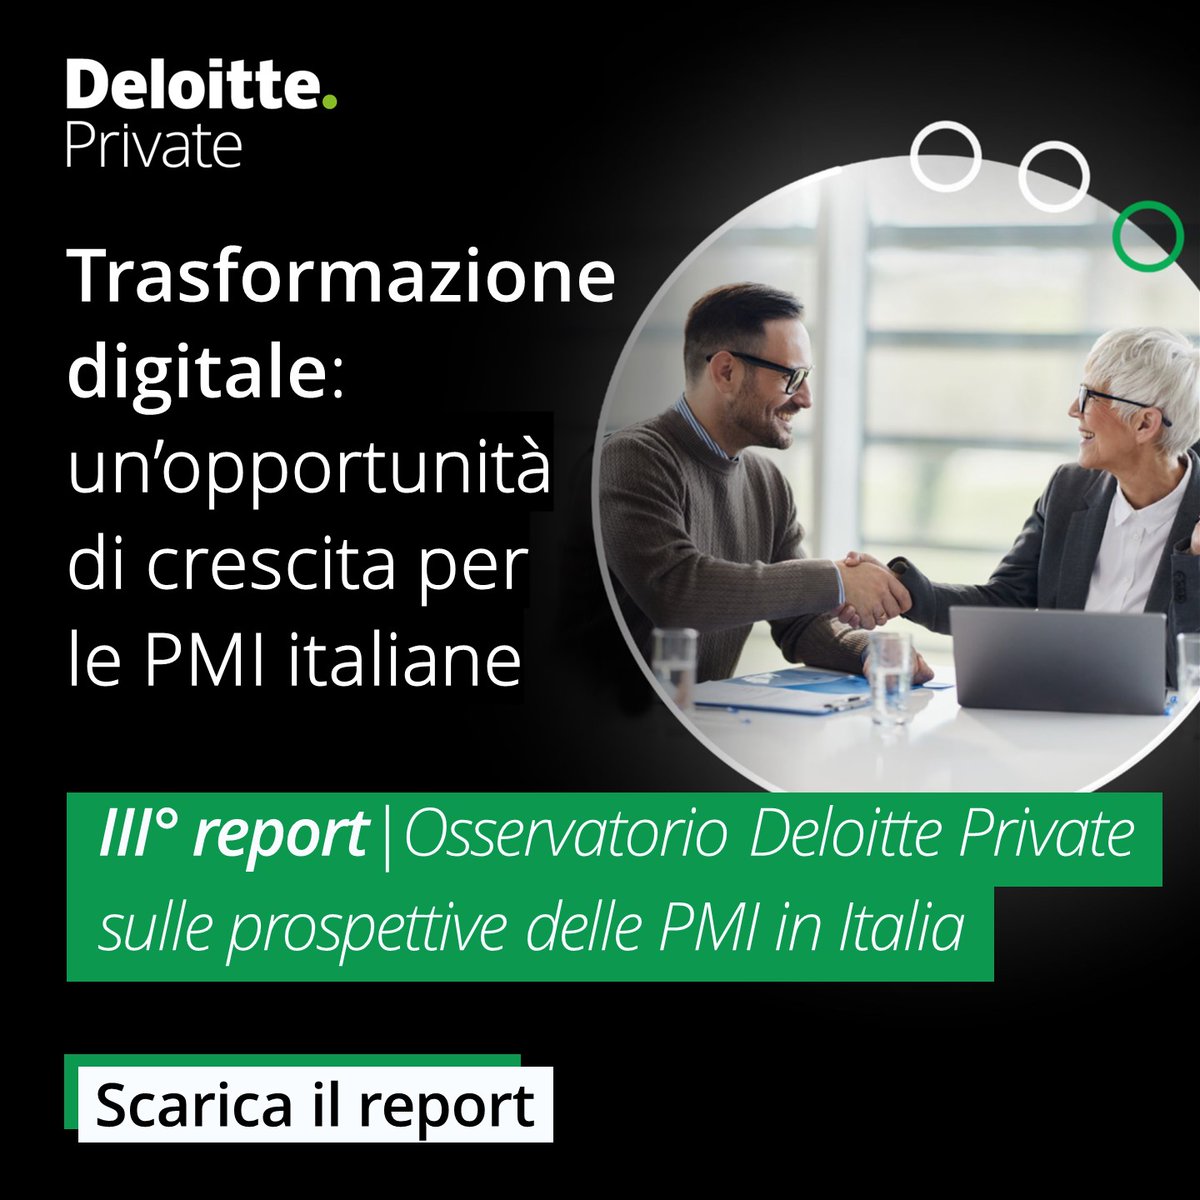 Nel terzo report dell’Osservatorio Deloitte Private viene analizzata l’influenza della trasformazione digitale sulle prospettive delle PMI in Italia. Scopri di più: deloi.tt/4dwcjhC #TrasformazioneDigitale #OsservatorioDeloittePrivate #DeloitteItalia